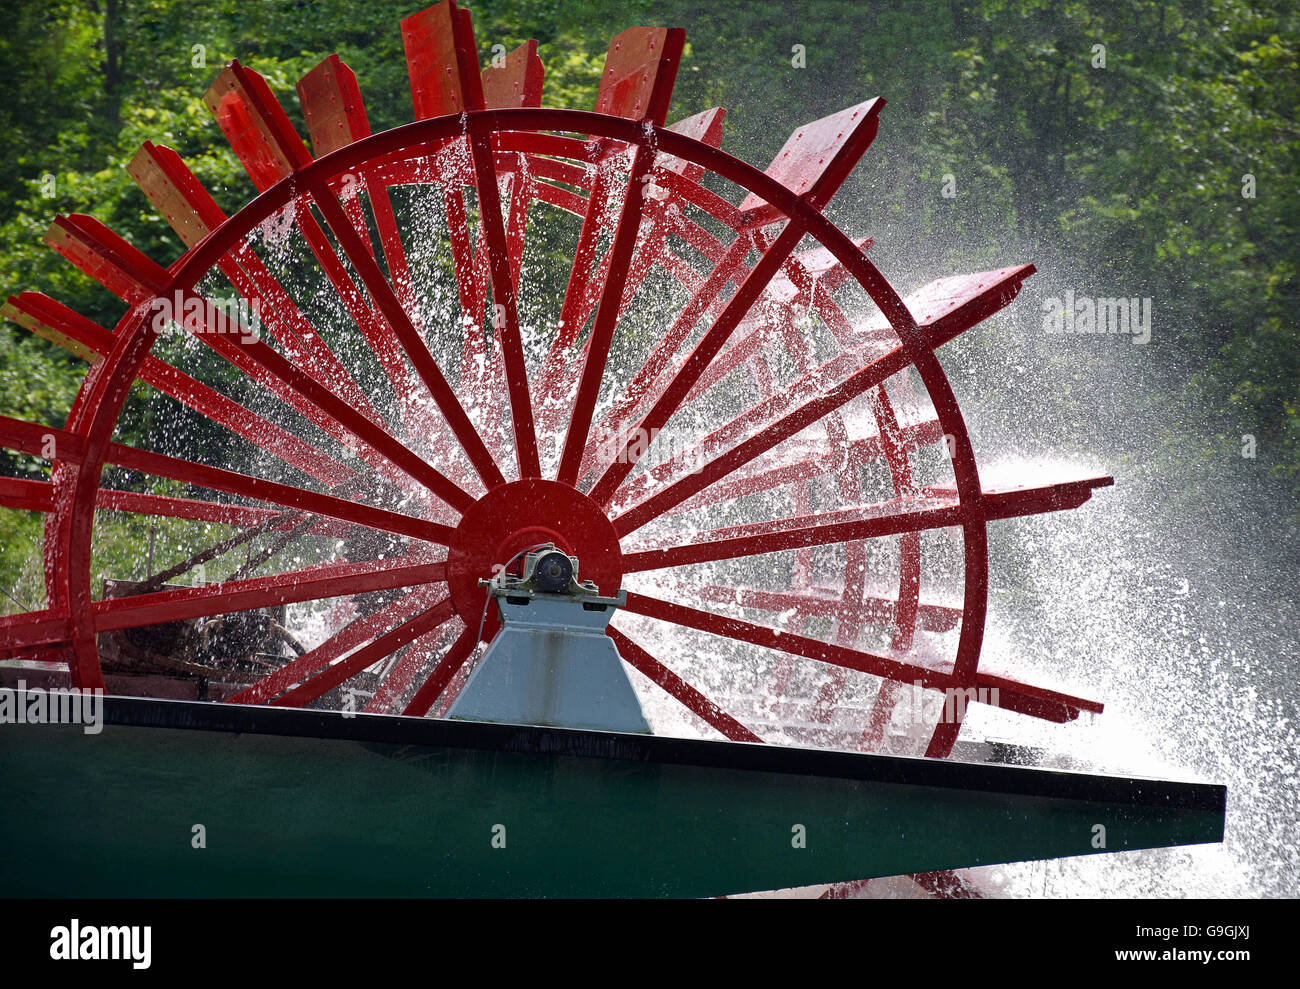 Rote Schaufelrad am Flussboot Besprühen mit Wasser in der Sonne. Stockfoto